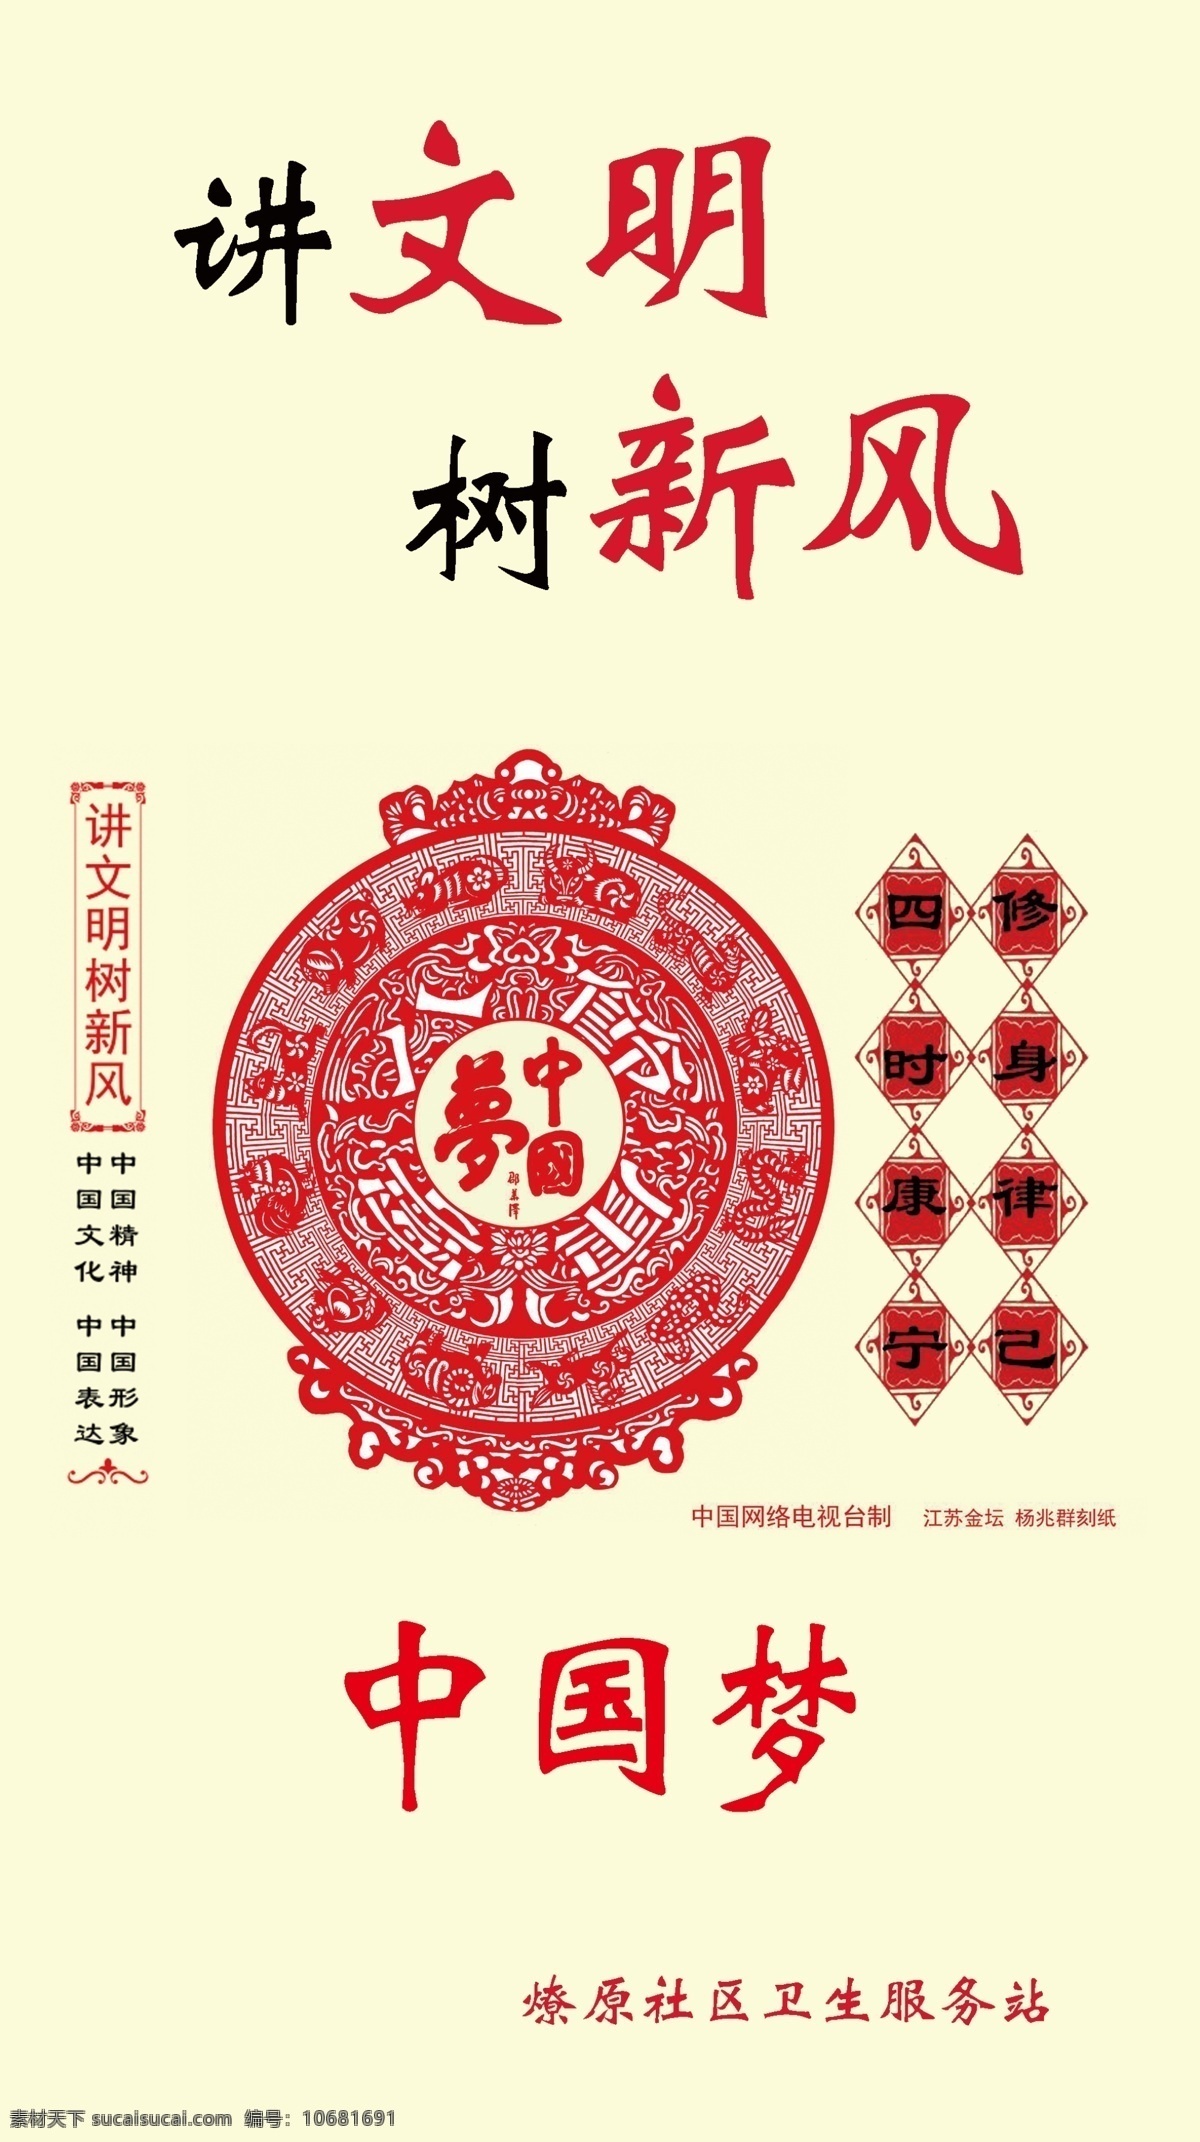 讲文明 树新风 中国梦 剪纸 漫画 展板模板 传统古典 道德文化 中国 中华